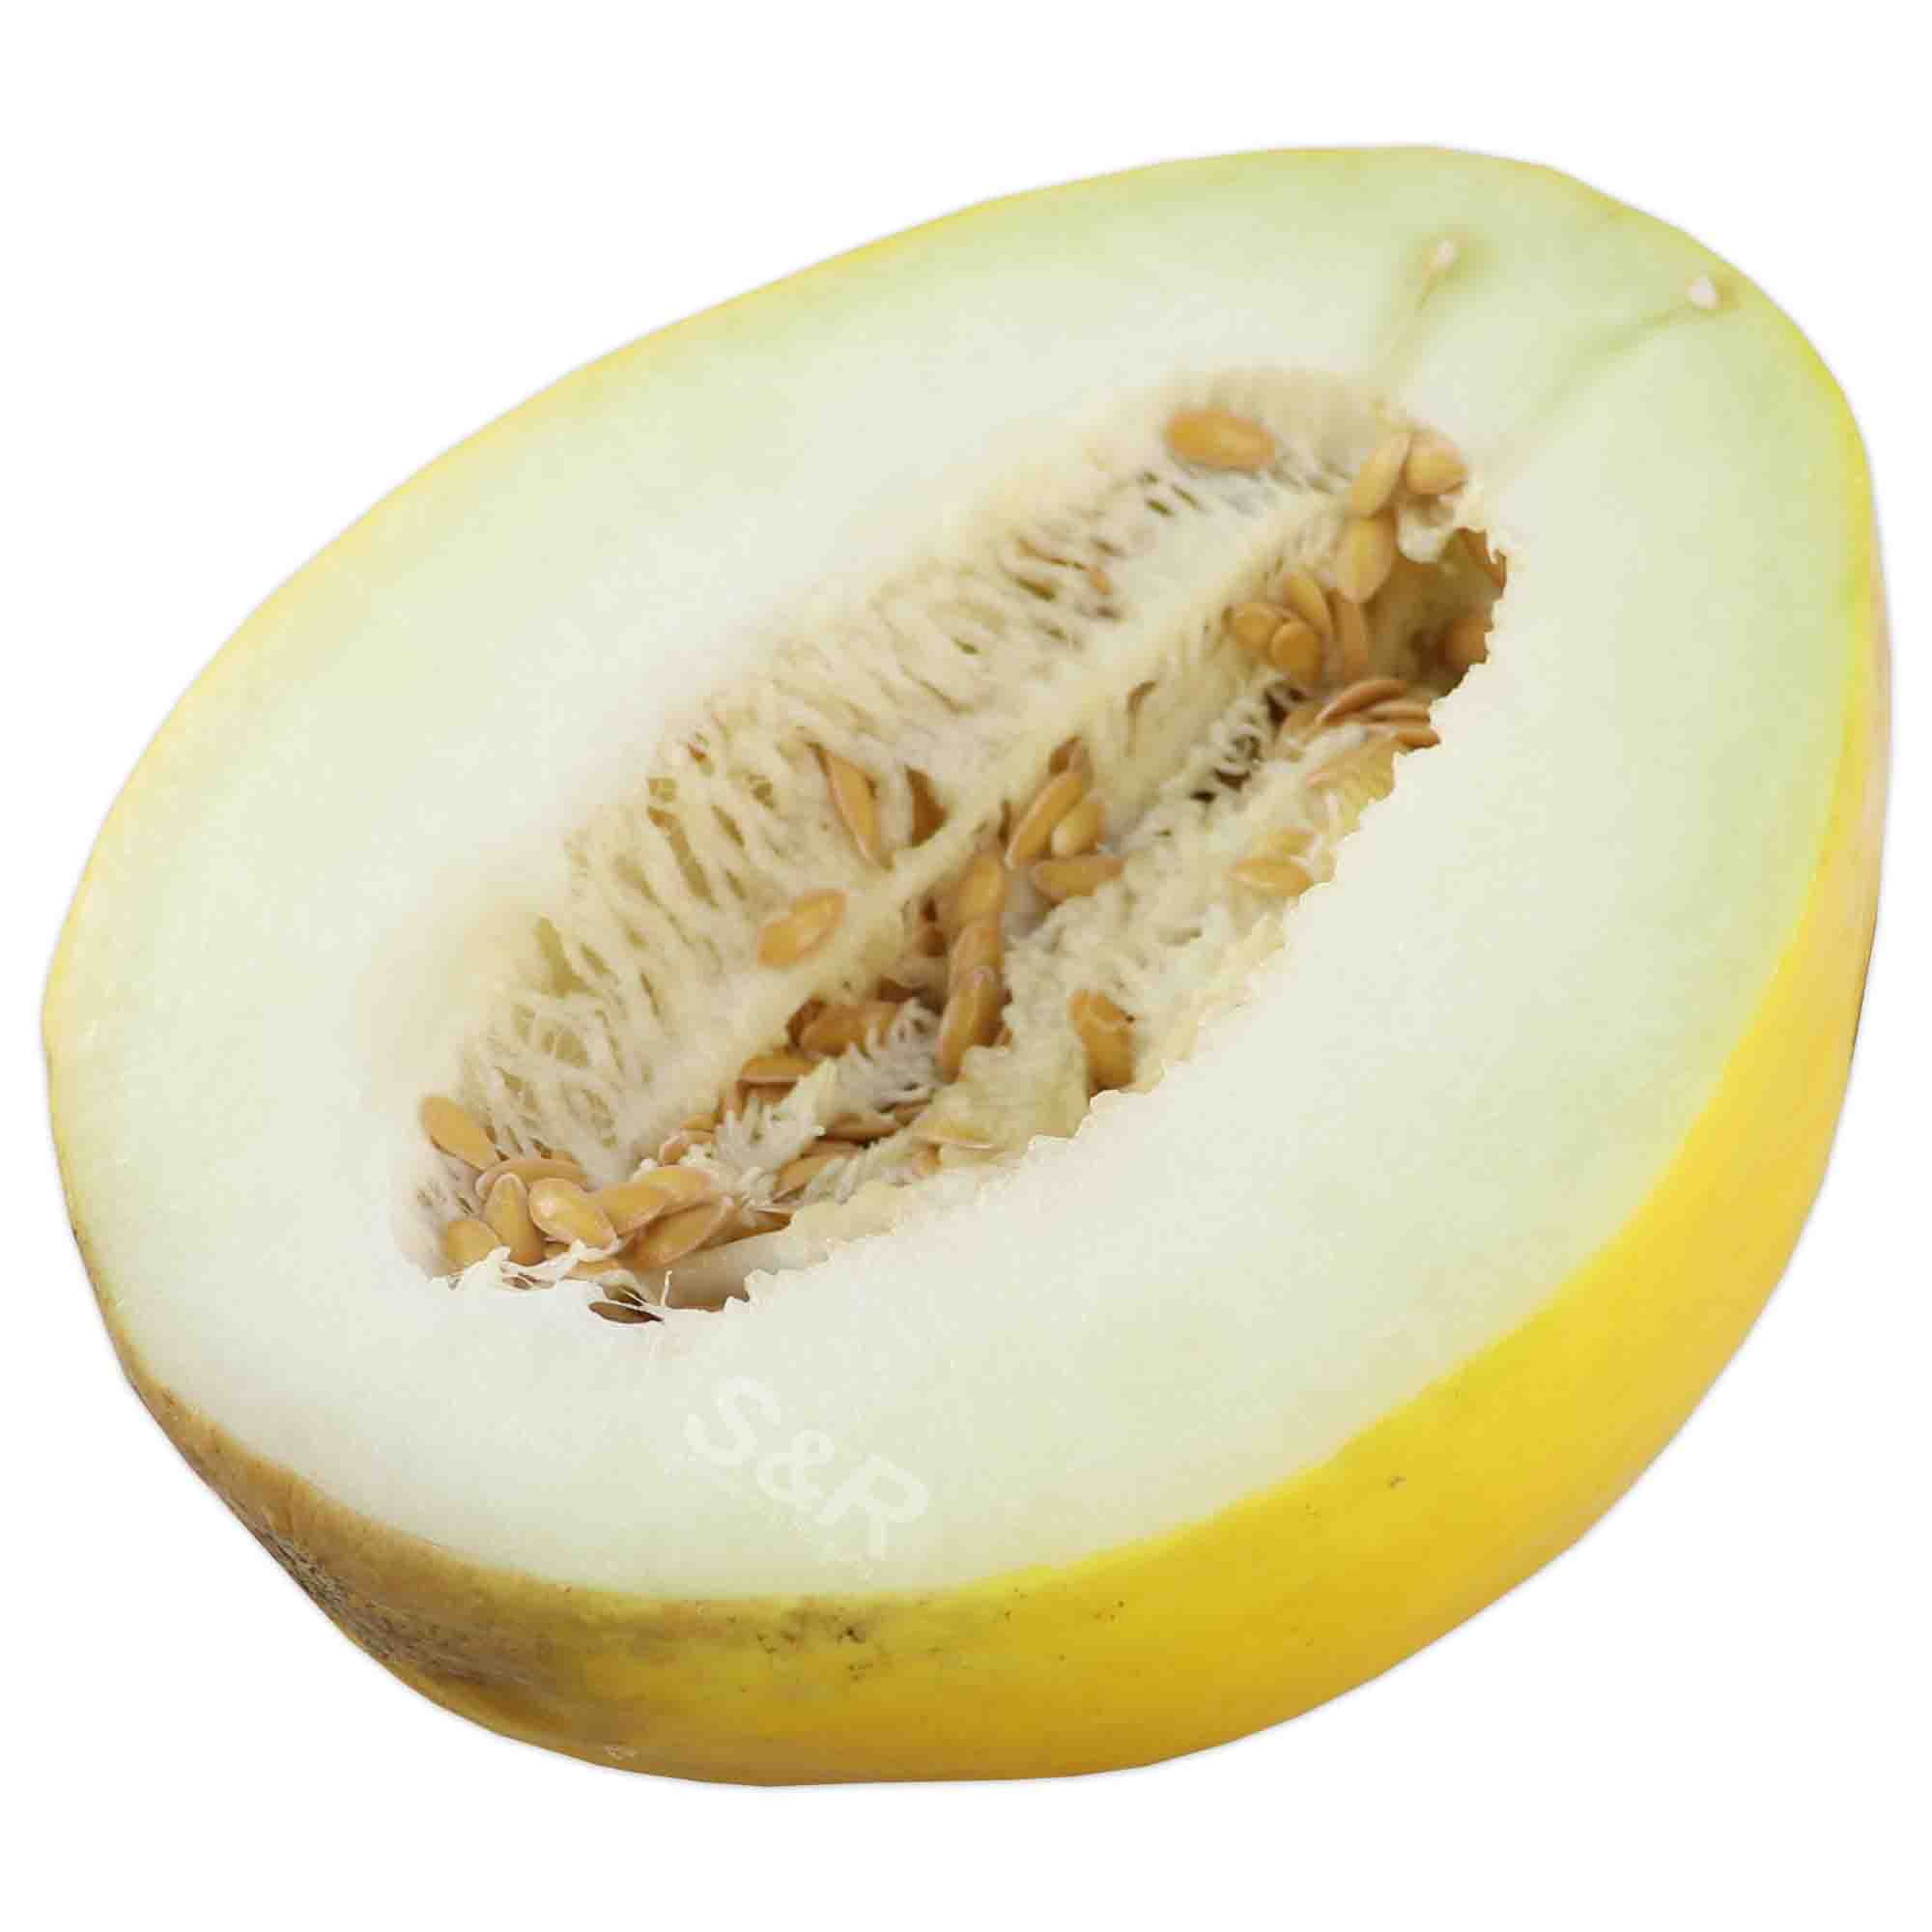 S&R Golden Honeydew Melon approx. 1.5kg